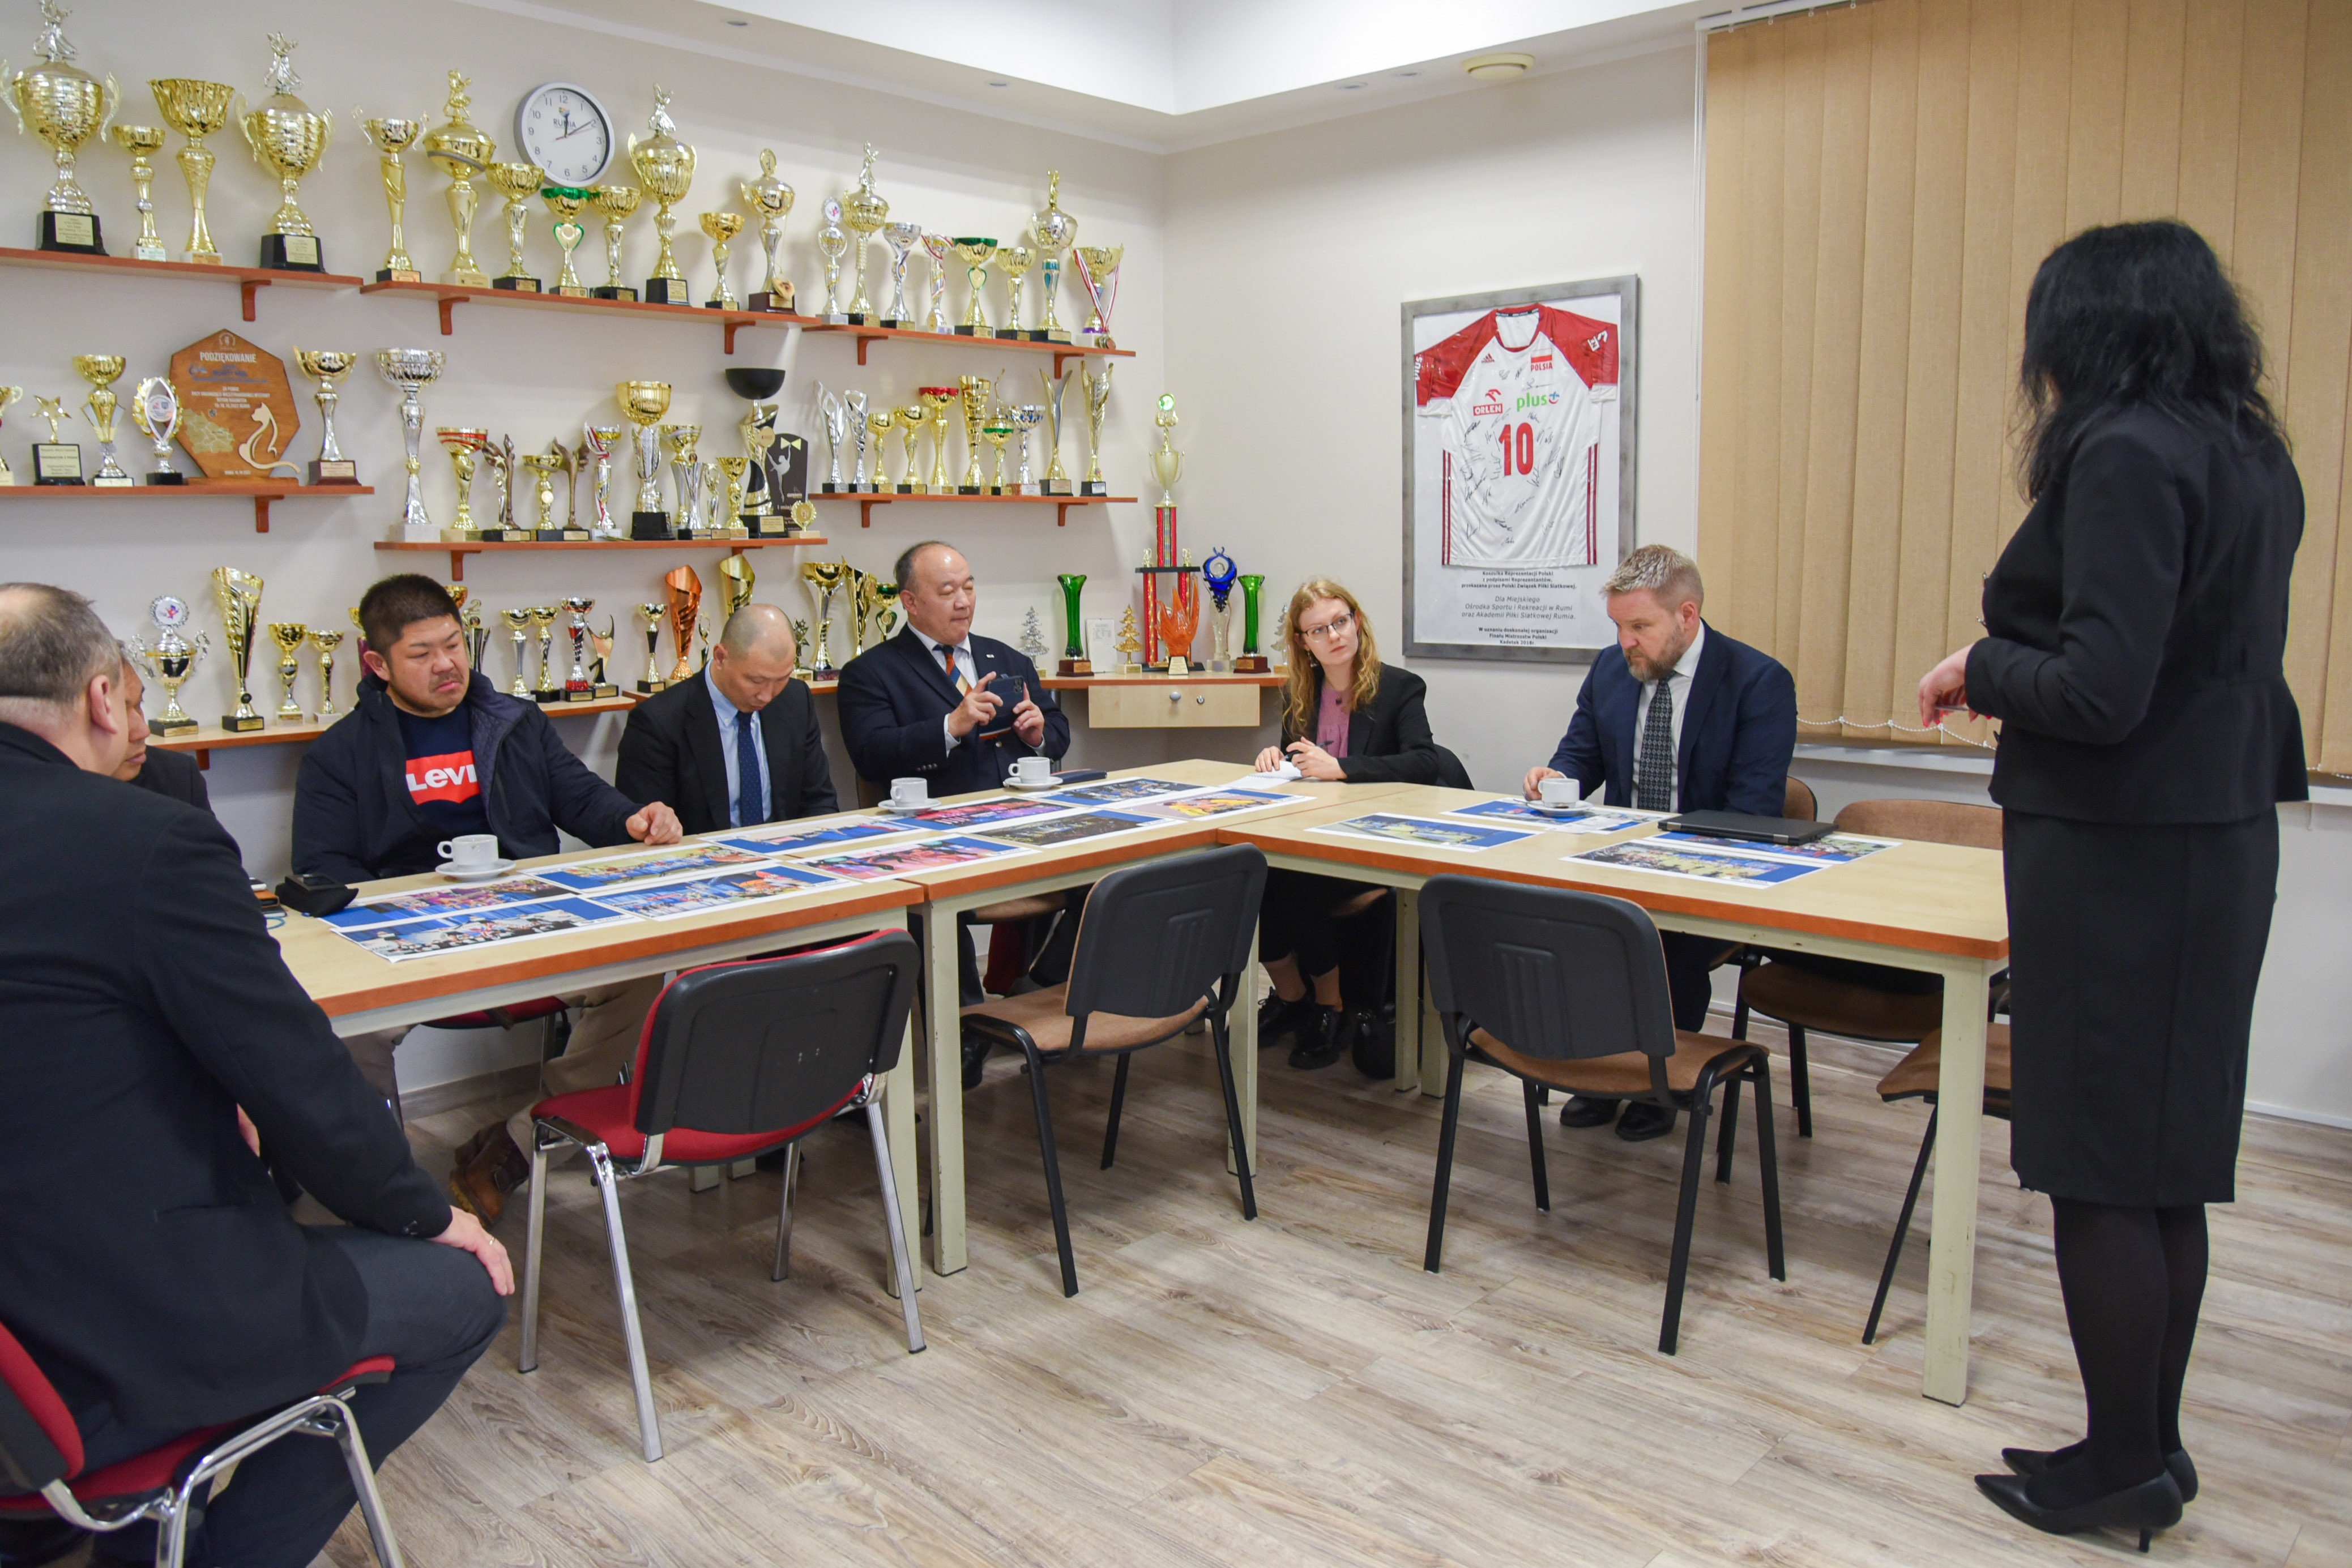 Członkowie delegacji podczas spotkania z burmistrzem Michałem Pasiecznym, dyrektor MOSiR-u Jolantą Król i przedstawicielami środowiska armwrestlingowego